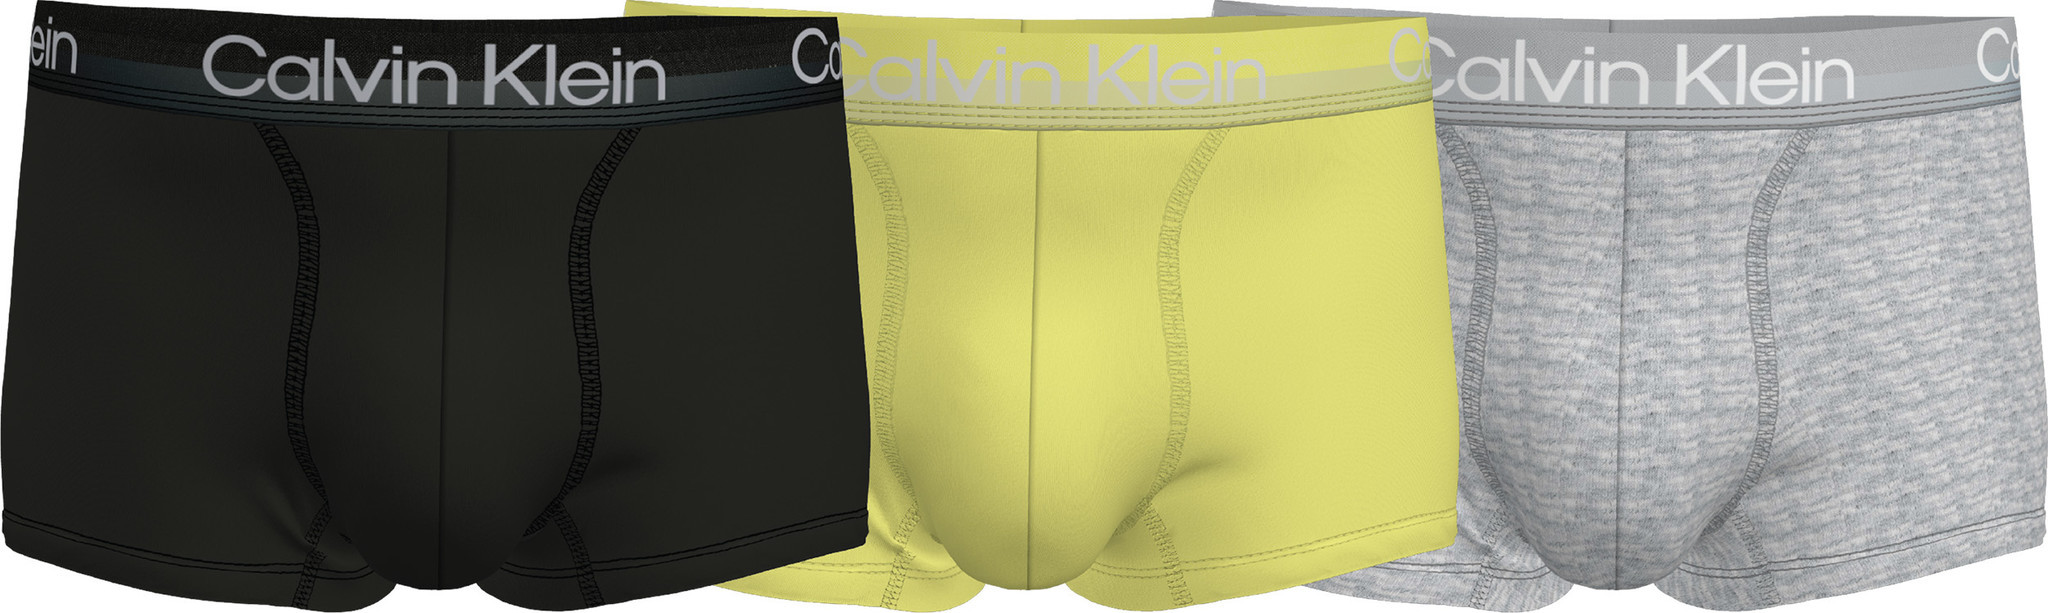 Calvin Klein Boxershorts 3-pack licht zwart geel